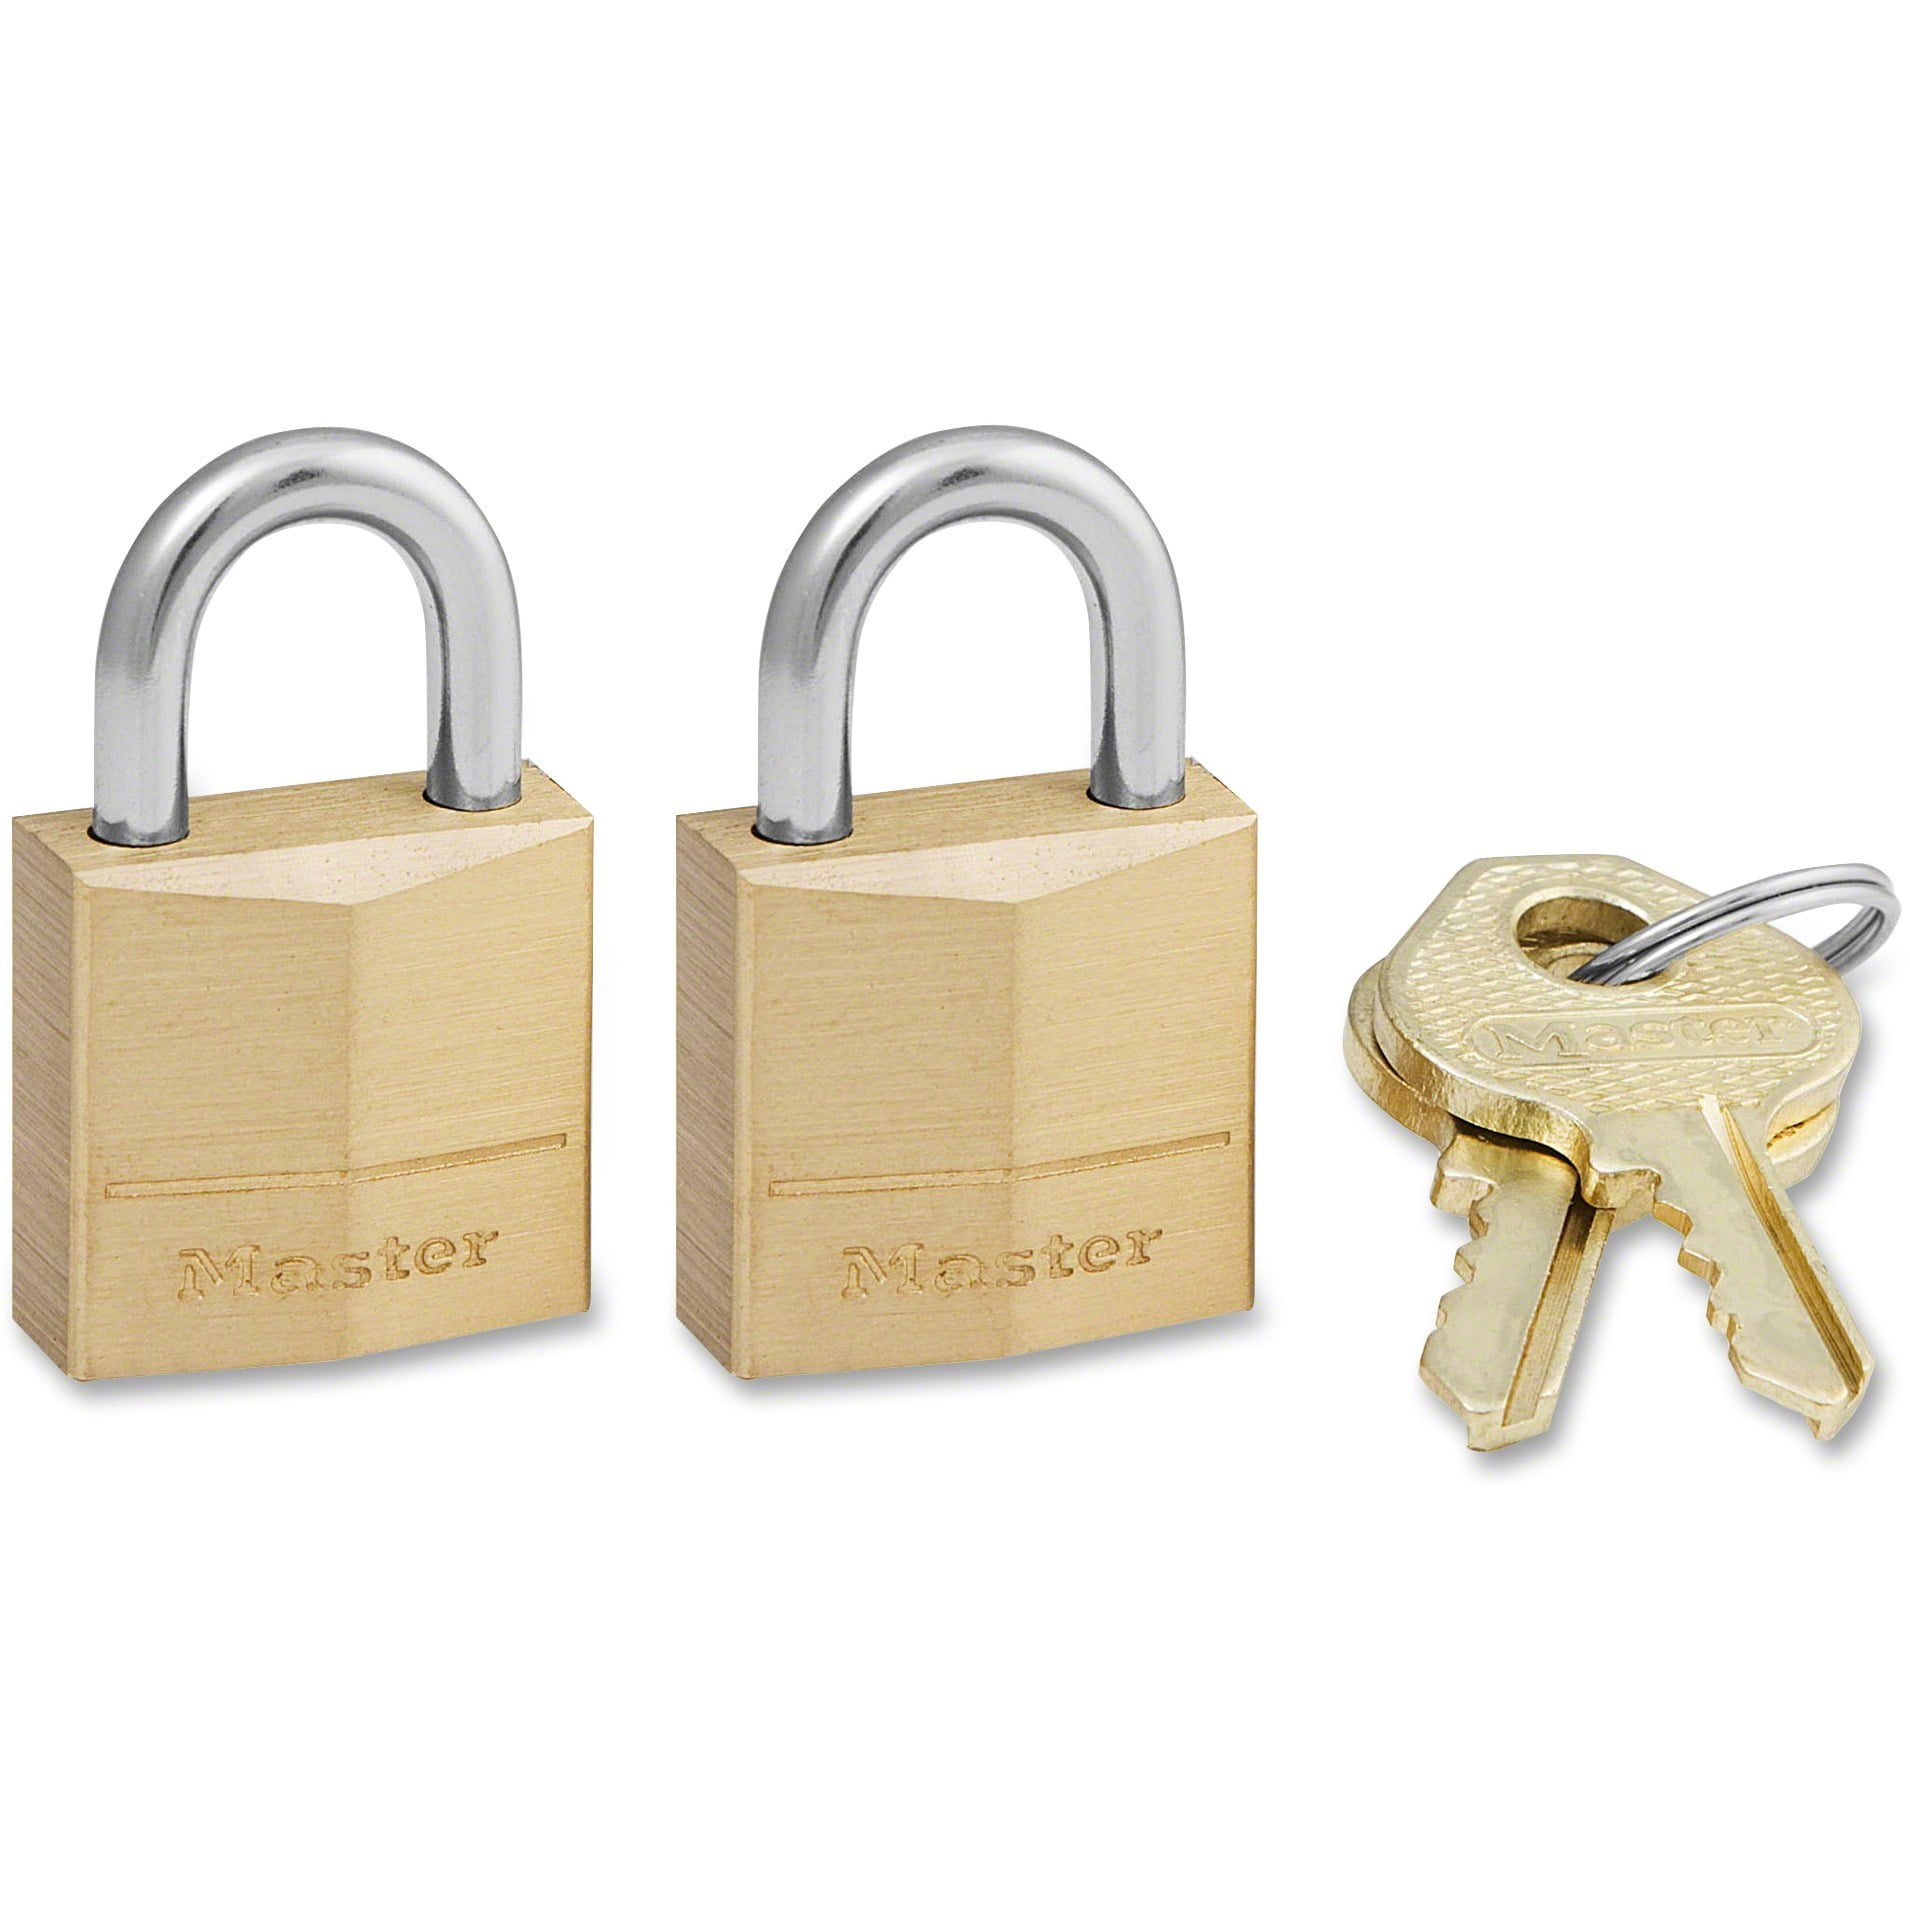 Set Of 2 Keyed Alike Padlocks 2 Locks 4 Keys All The Same Weather Resistant 40mm 